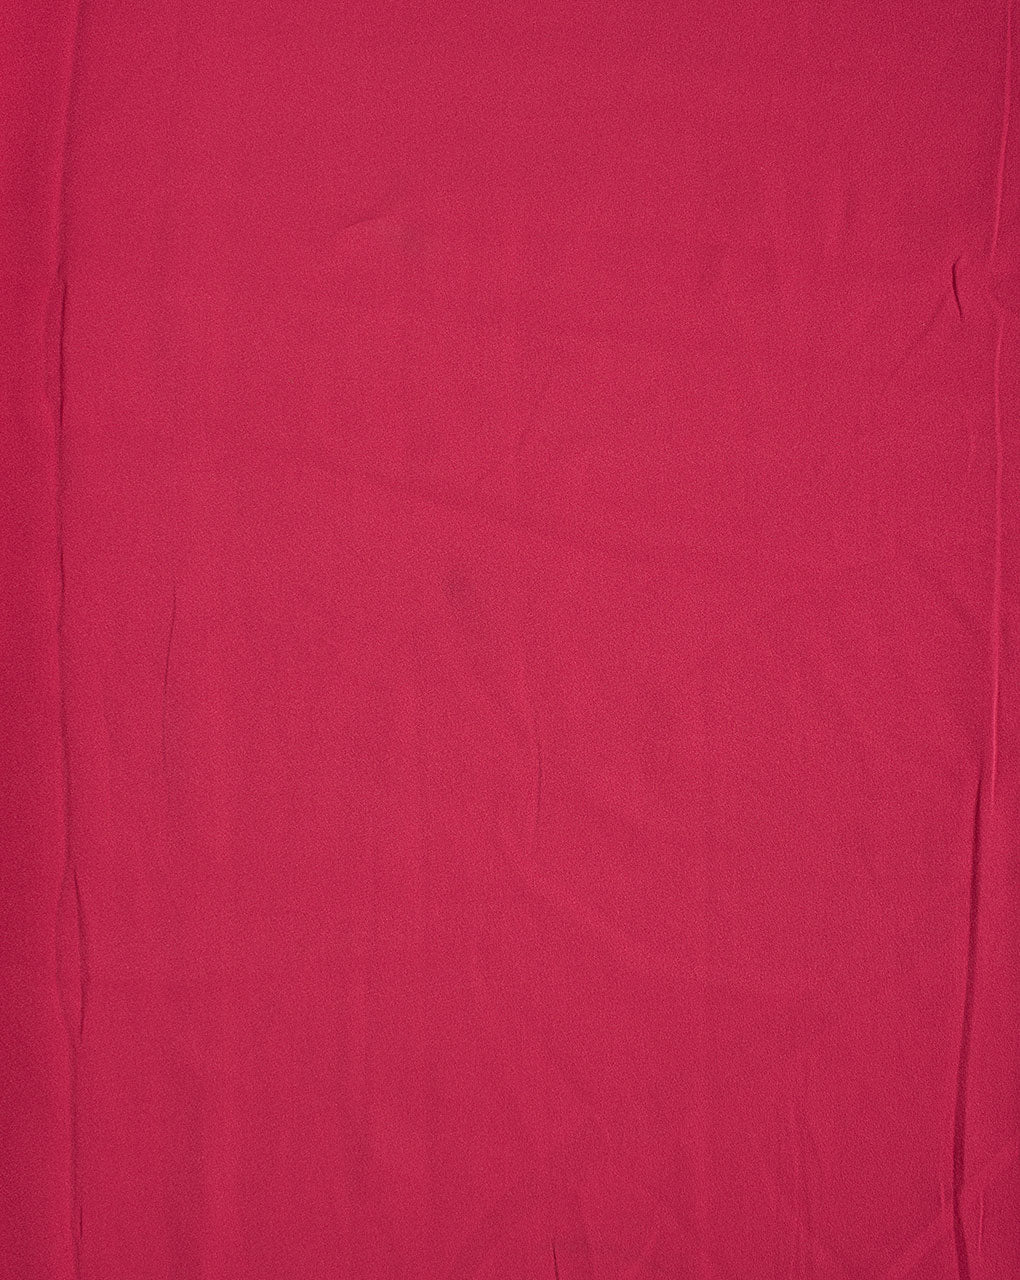 Crimson Red Plain Crepe Fabric